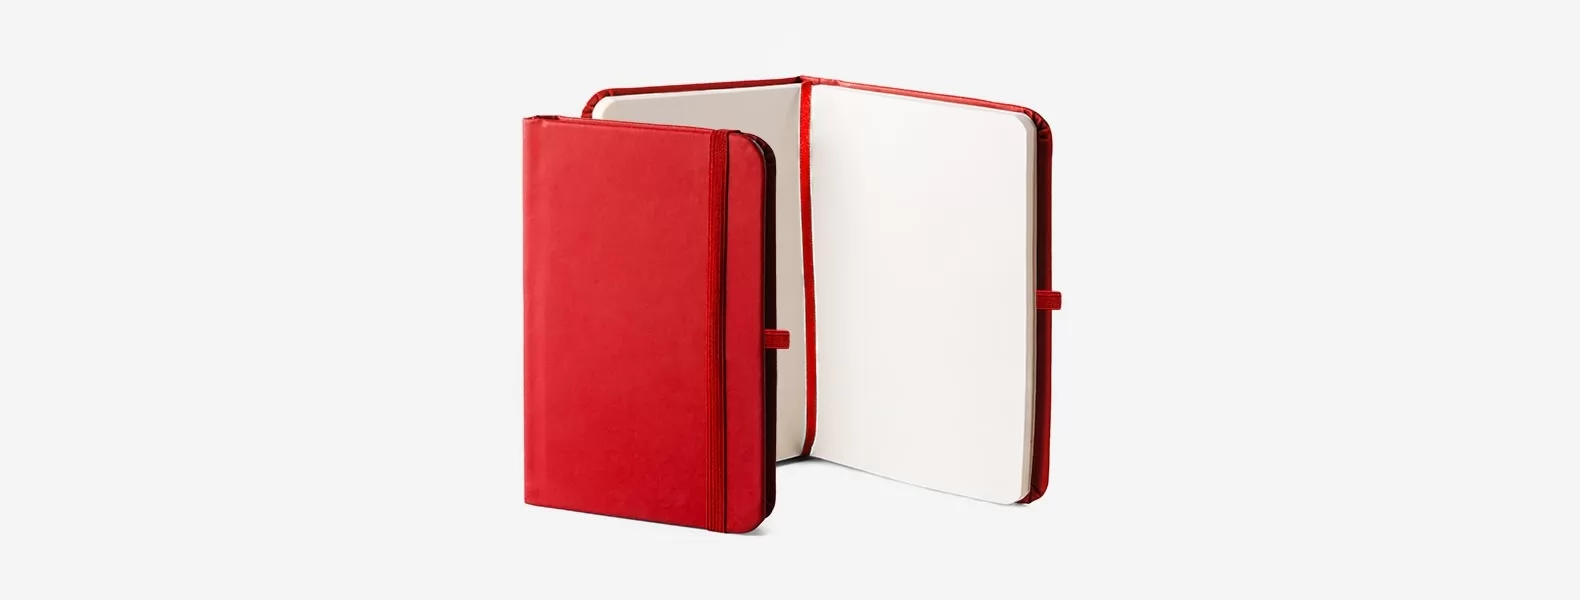 Caderneta P/ AnotaÇões 21x14cm - Vermelha - 80 Folhas